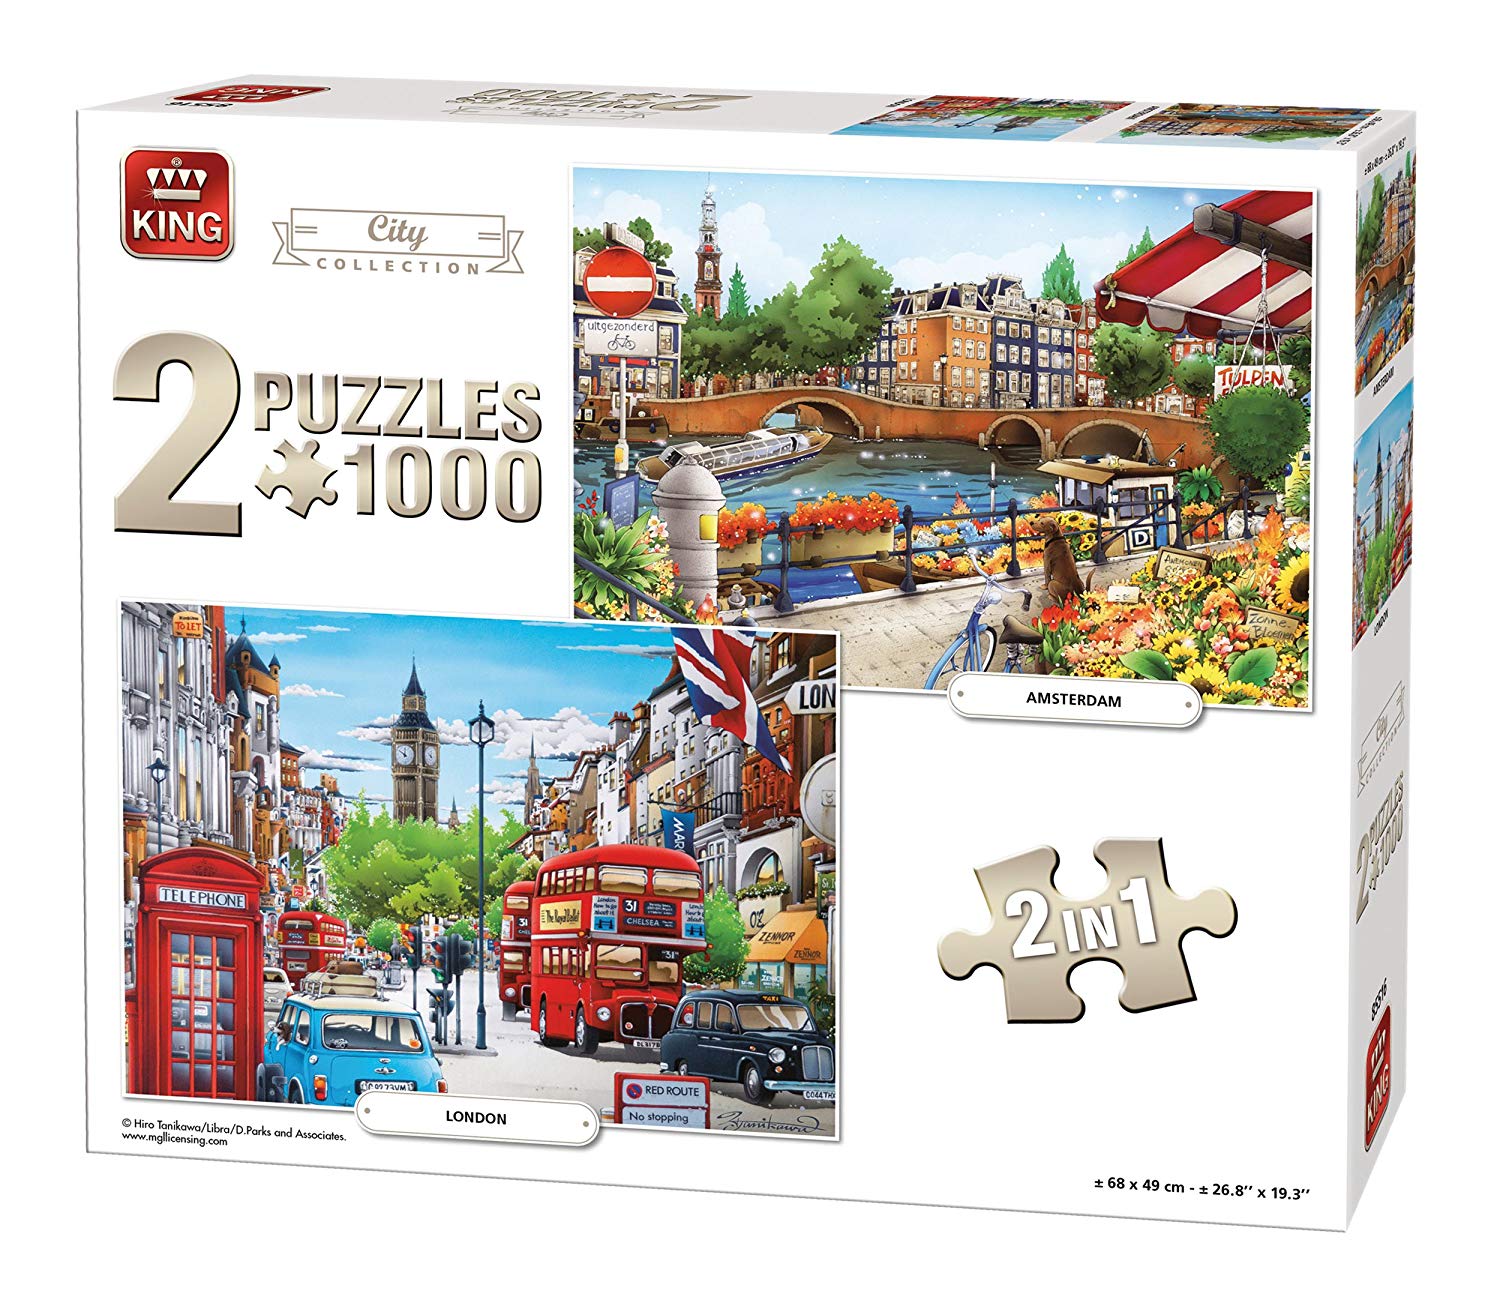 Puzzle 1000 Pieces - 2 Puzzles - Amsterdam & London